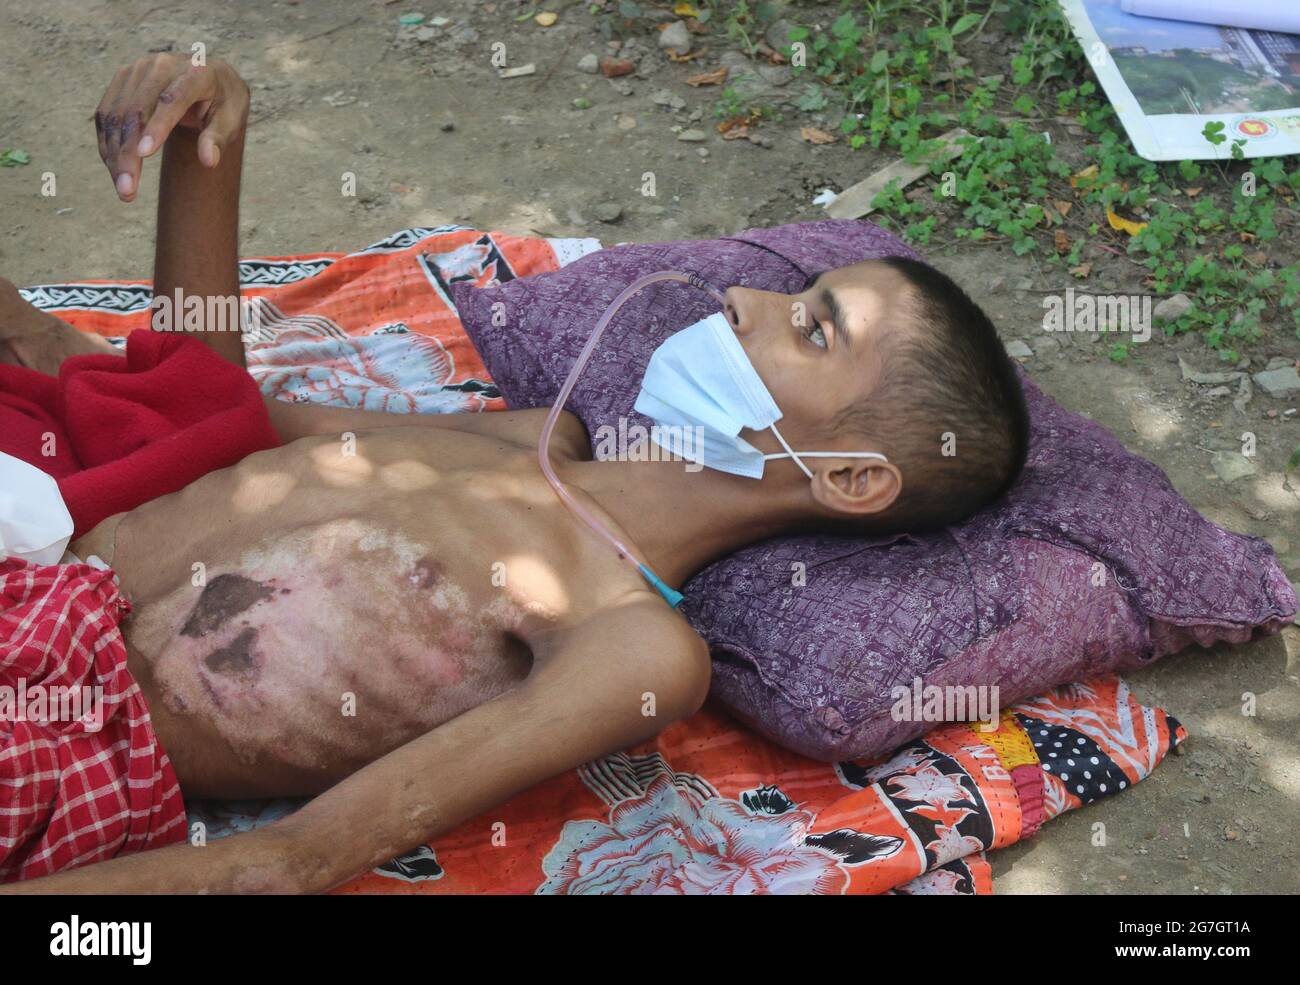 Julio de 14,2021. Dhaka, Bangladesh: Saiful Islam, edad 14 años. Fue admitido en la unidad de quemaduras del Hospital Médico de Dhaka durante tres meses y veinte días Foto de stock